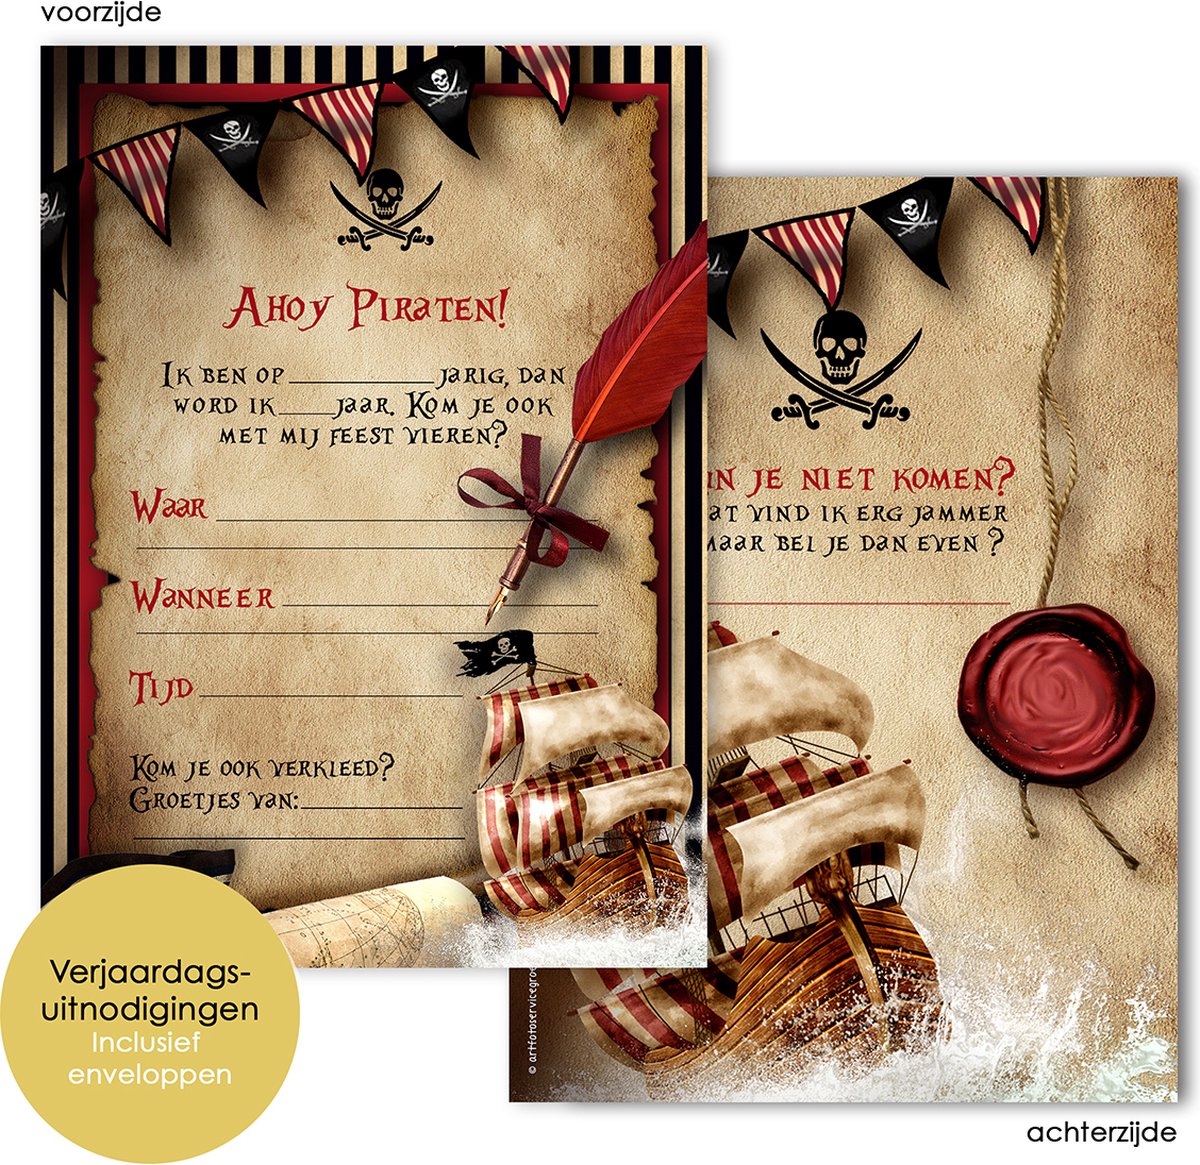 Cartes d'invitation et enveloppes Harry Potter – 20 invitations à